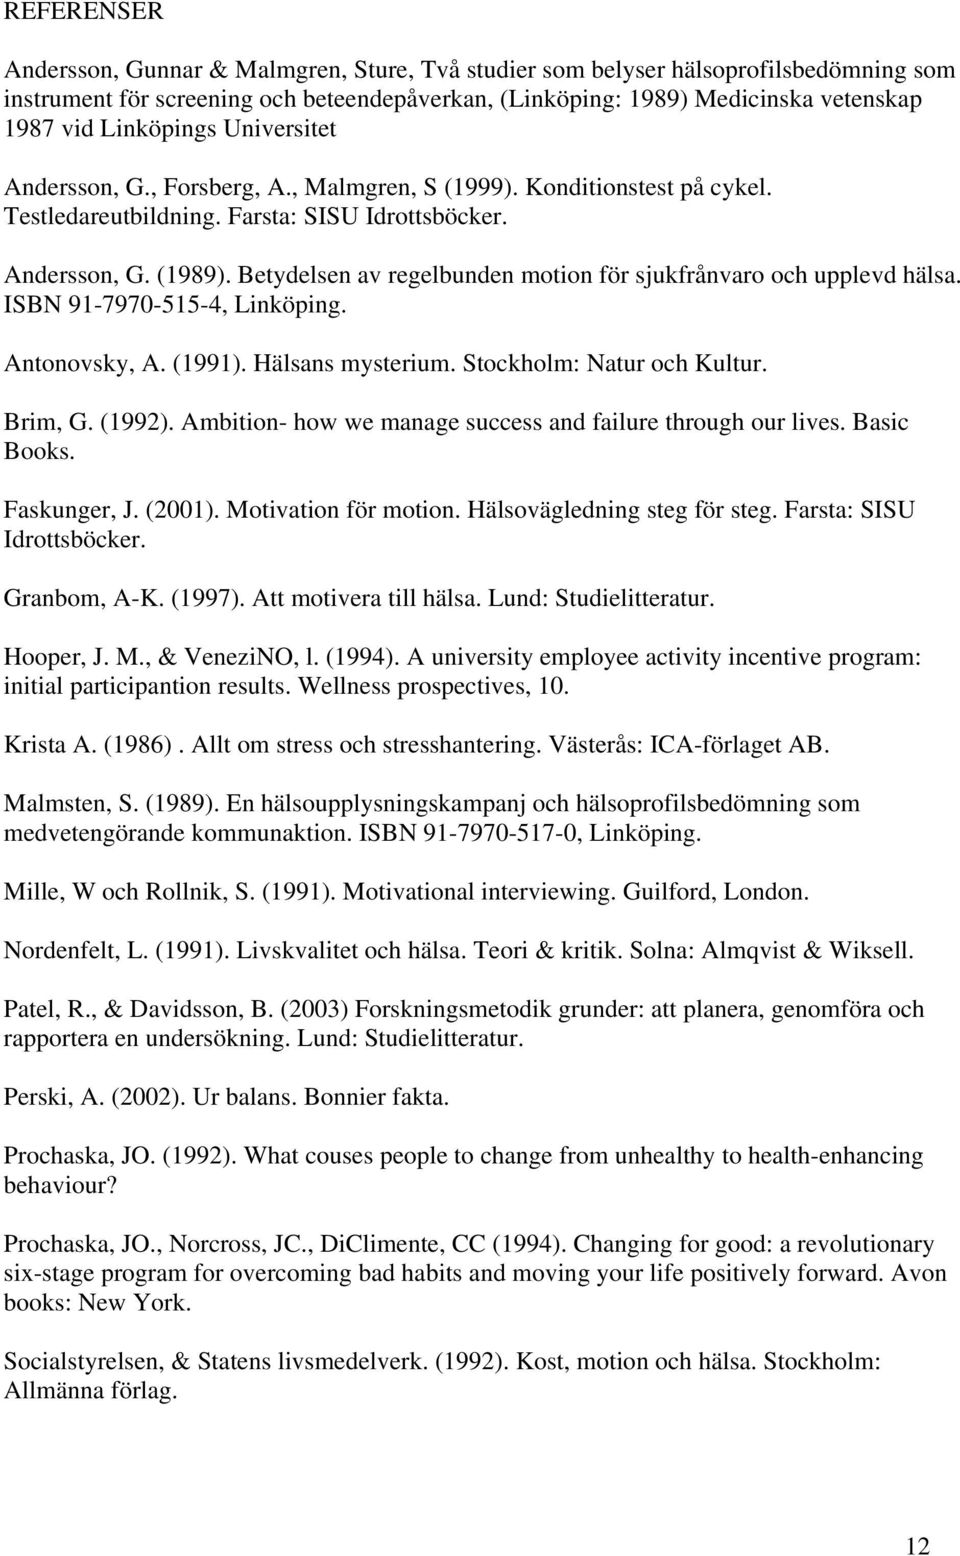 Betydelsen av regelbunden motion för sjukfrånvaro och upplevd hälsa. ISBN 91-7970-515-4, Linköping. Antonovsky, A. (1991). Hälsans mysterium. Stockholm: Natur och Kultur. Brim, G. (1992).